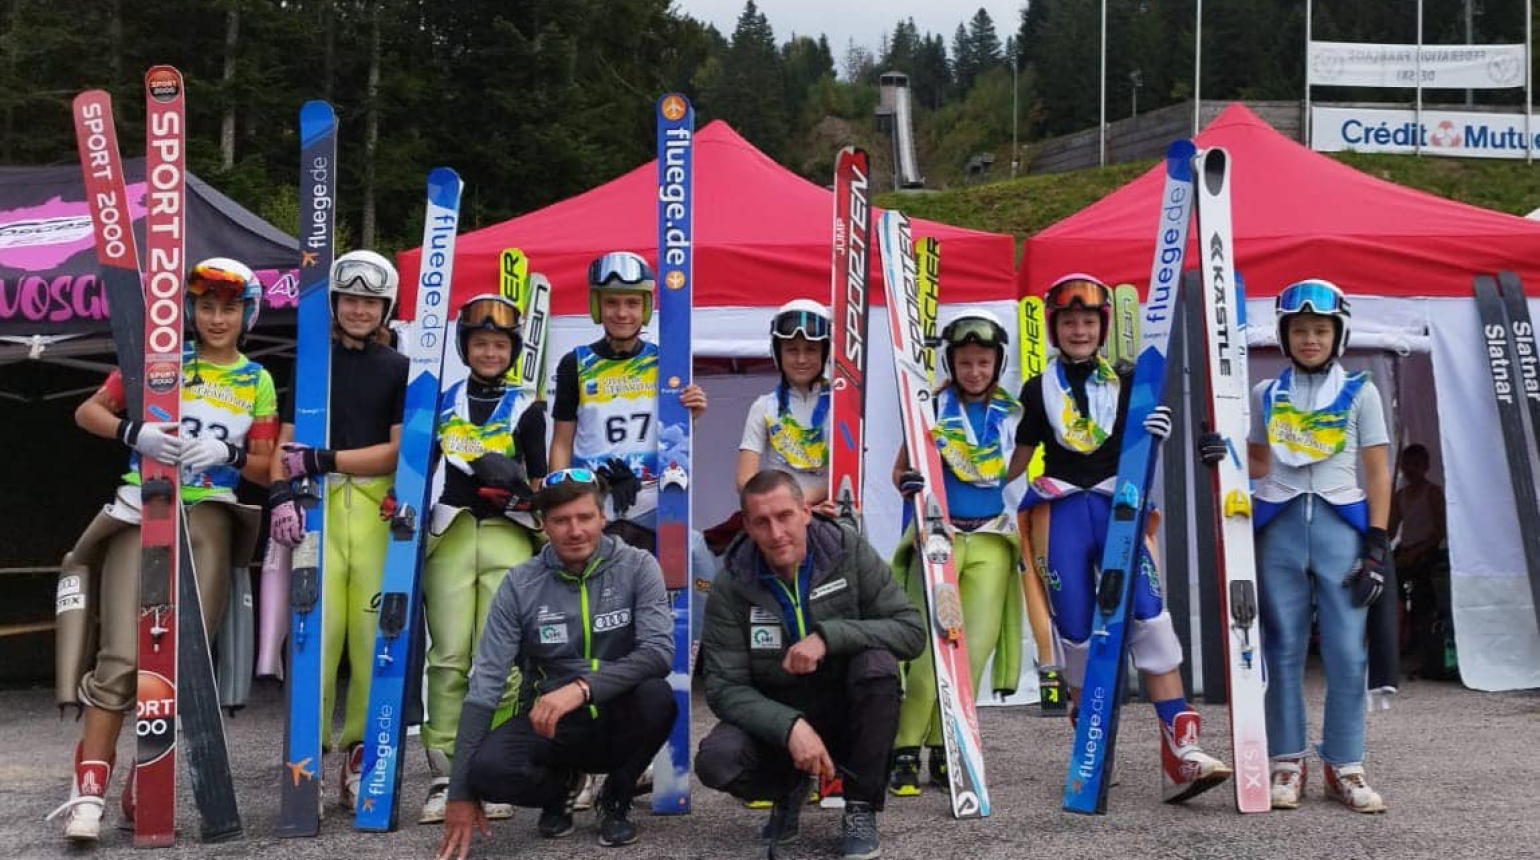 Alpen Cup: Čtveřice českých reprezentantů v elitní dvacítce, prvenství slavili Liardon s Gruberovou